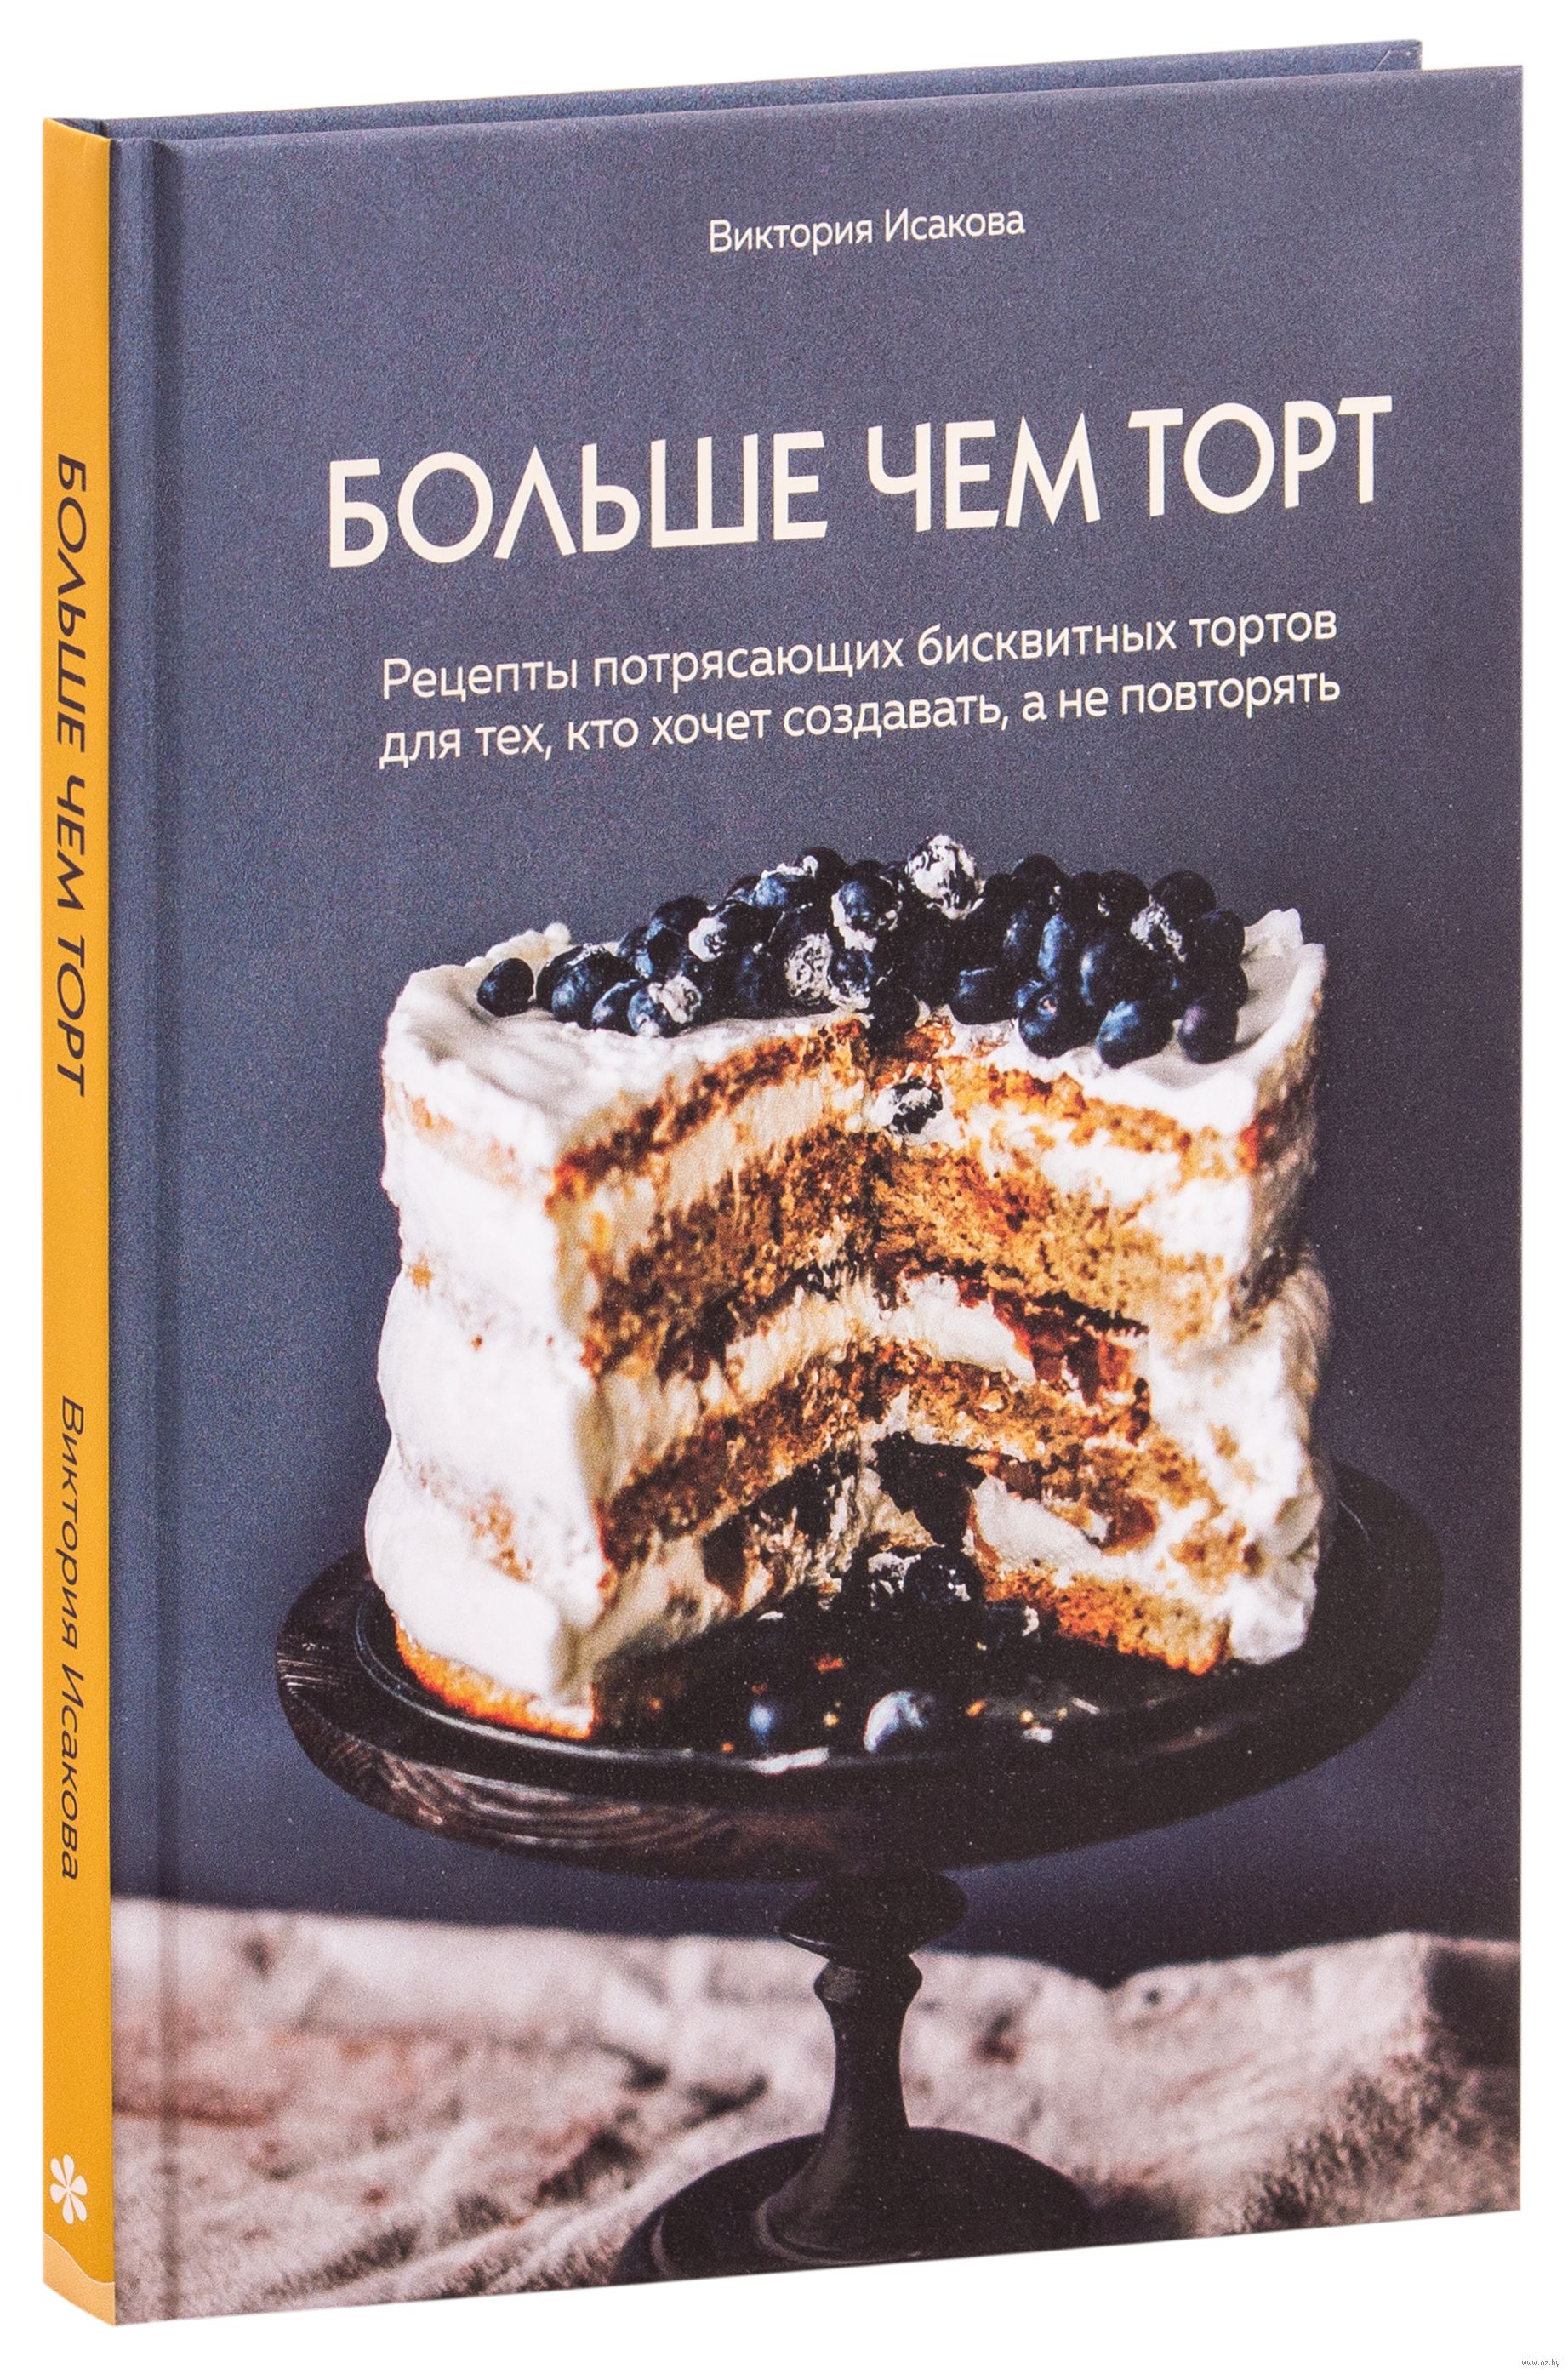 Торт книжка на юбилей - 71 фото